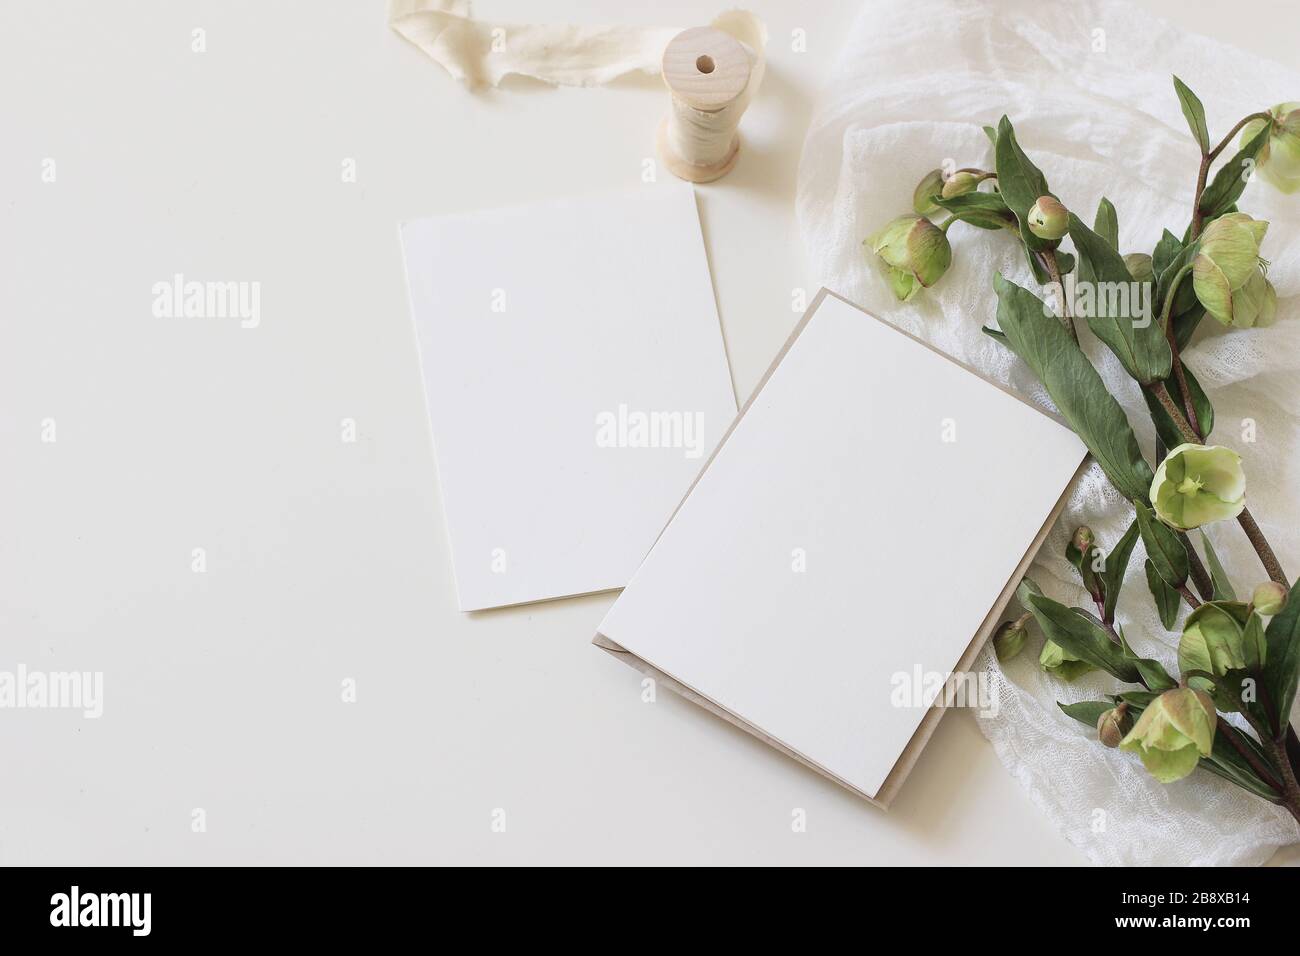 Stockfoto im Stil eines Hochzeitsfrühlings. Feminine Desktop-Mockup-Szene mit grünen Hellebores Blumen, Seidenband, Muslin-Tuch und leerem Papier-Grußwagen Stockfoto